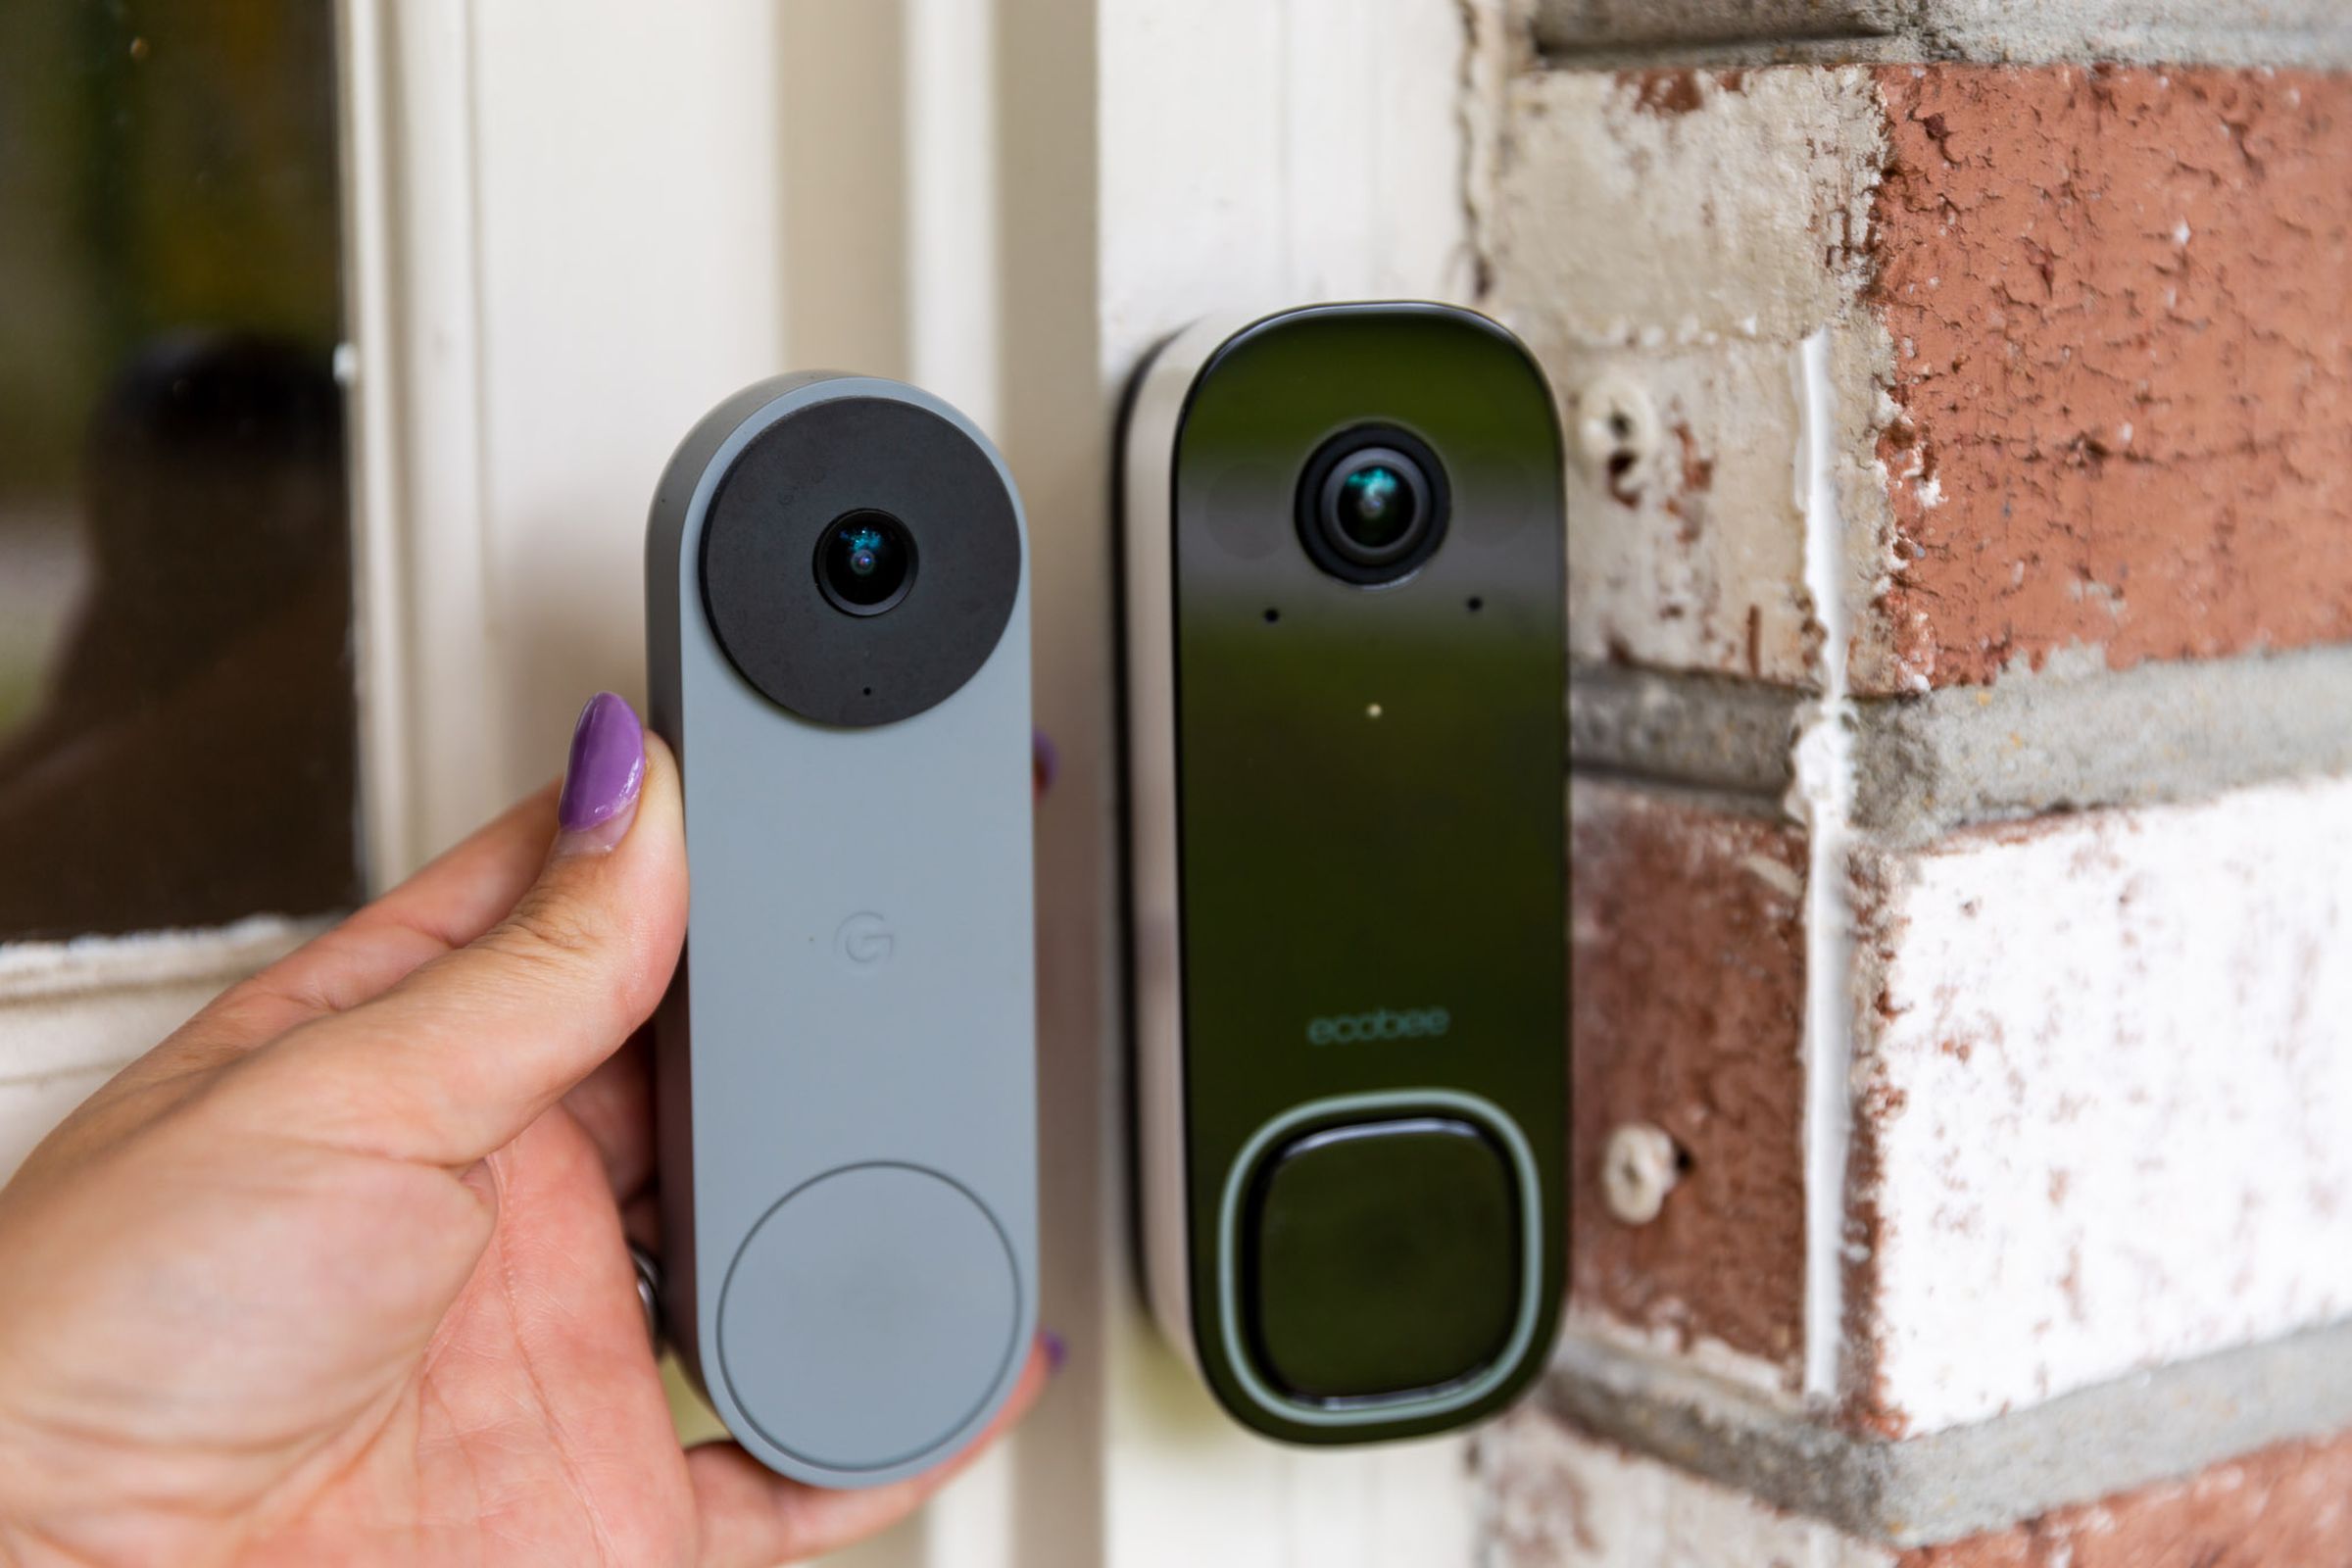 The Ecobee doorbell alongside the Nest doorbell (wired).